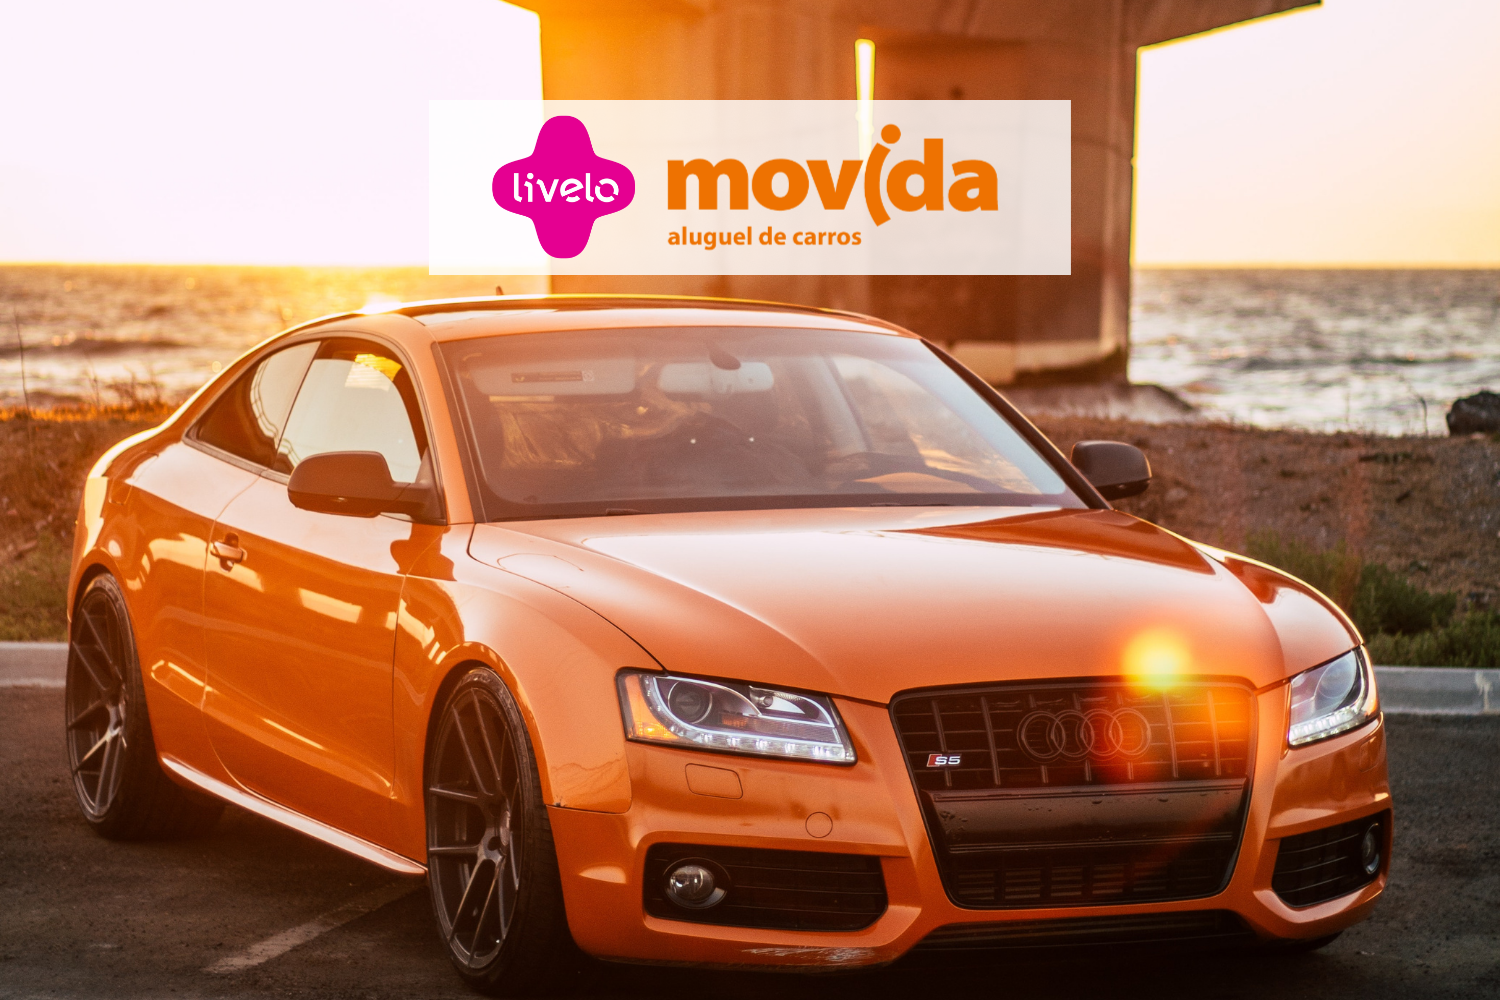 Carro laranja com logo Livelo e Movida